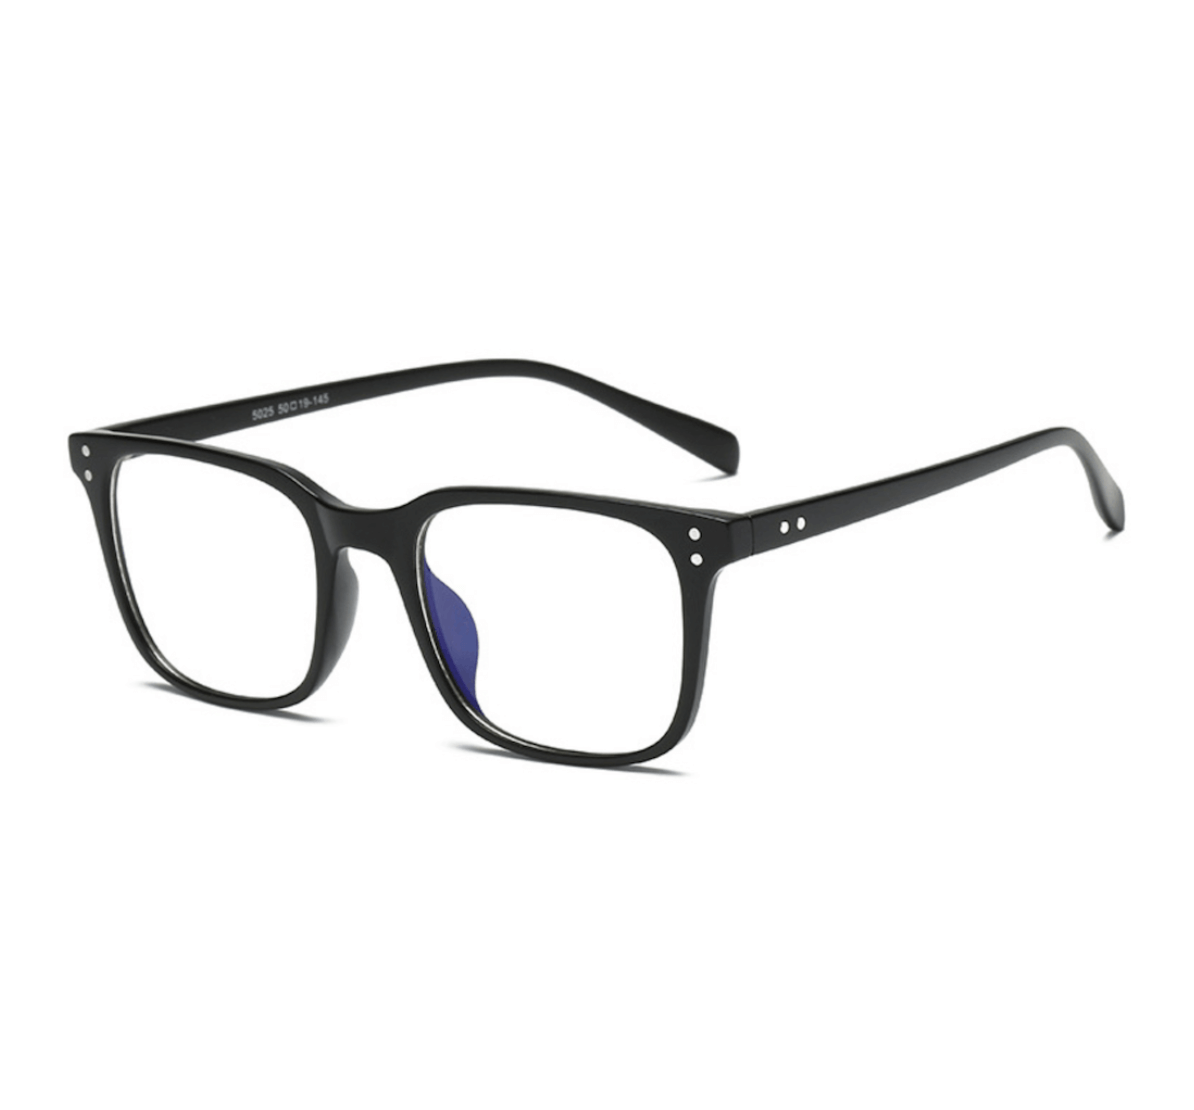 retro square TR90 blue light glasses bulk, wholesale blue light glasses, blue light glasses supplier, blue light glasses China